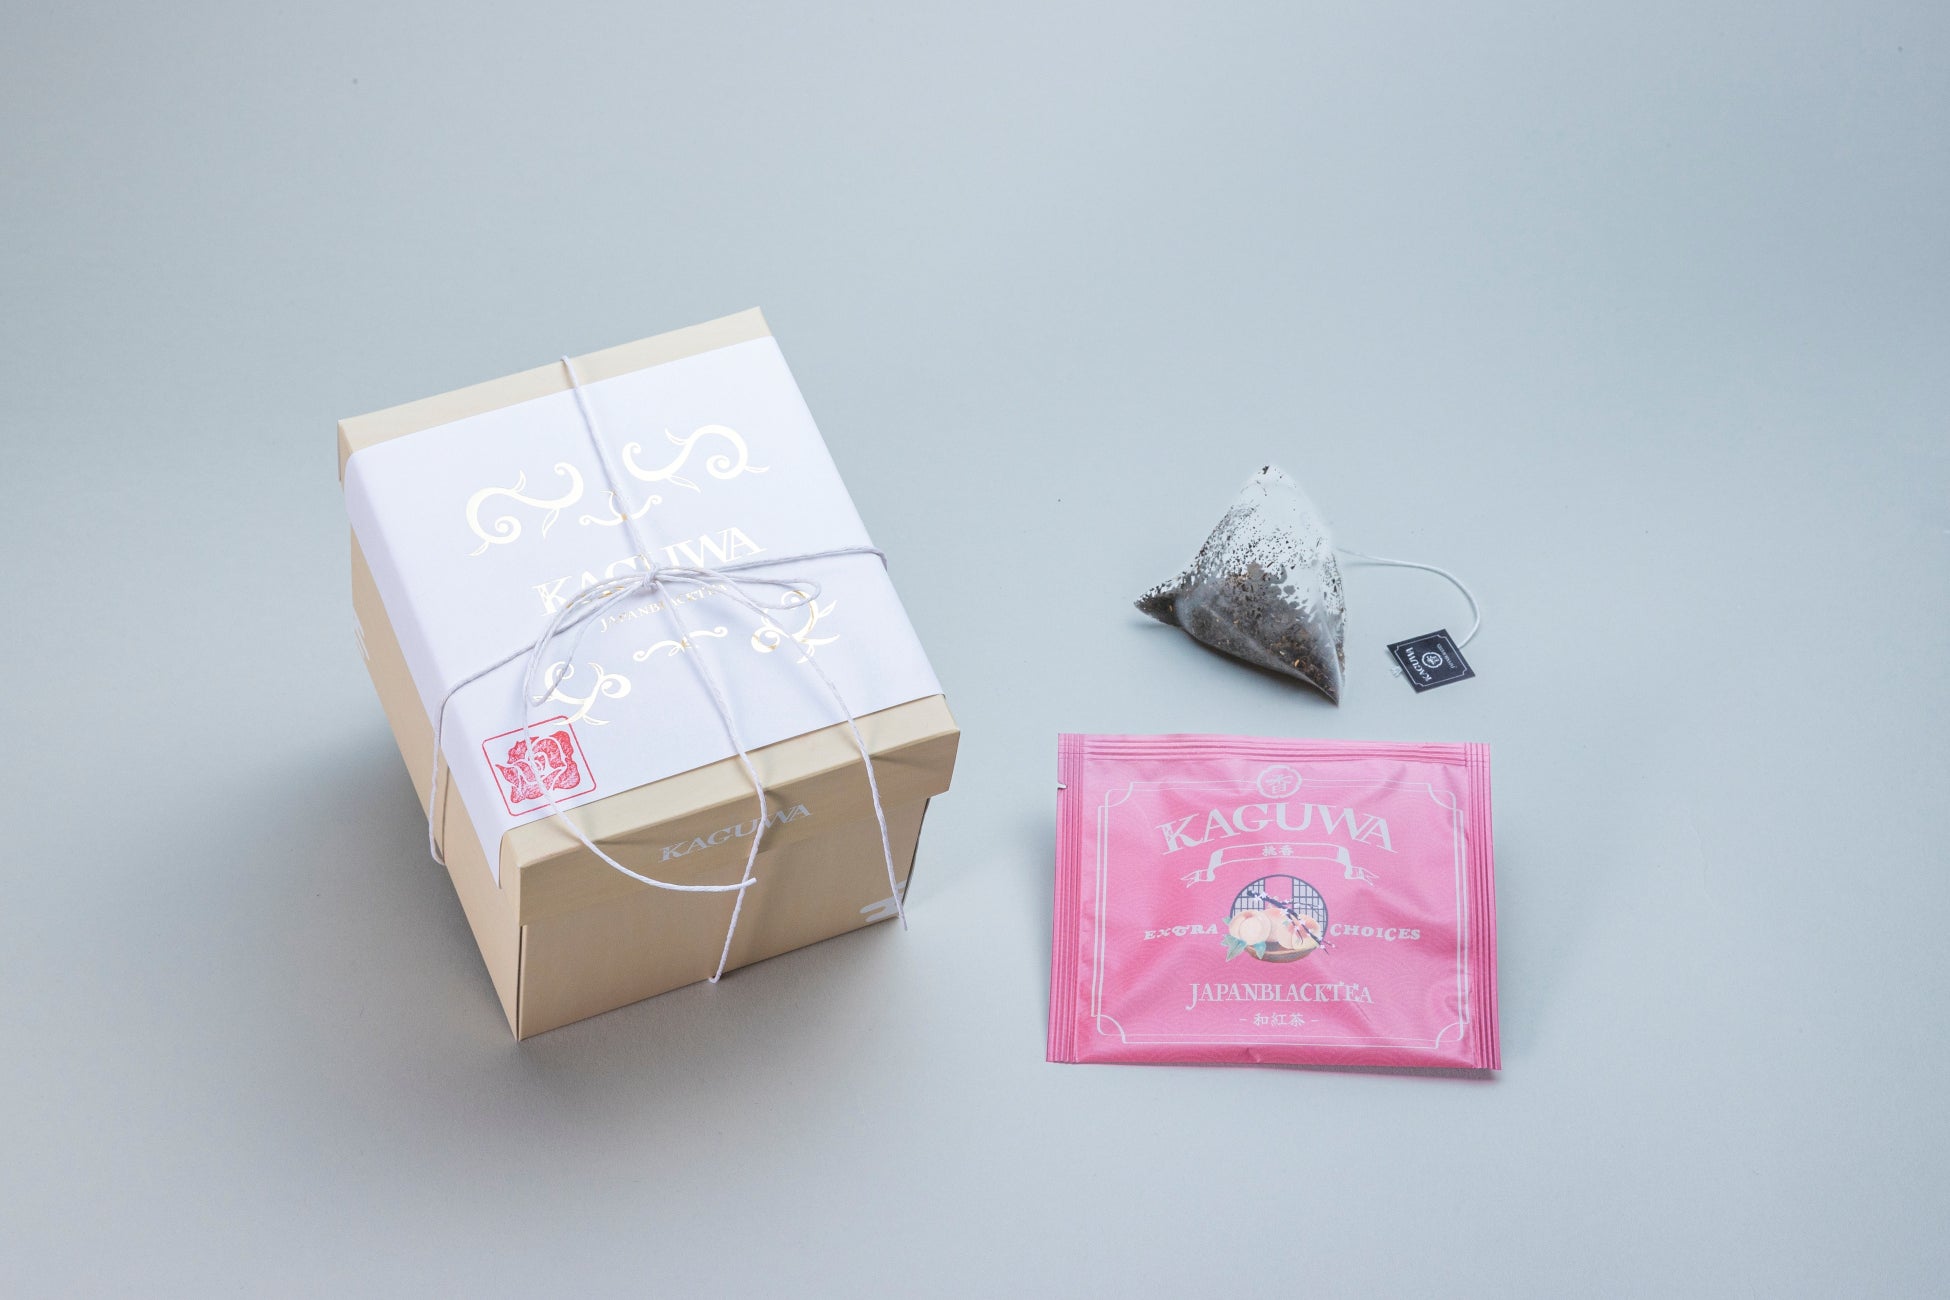 【日本発】茶葉本来の自然の香りを楽しむ和紅茶ブランド「KAGUWA」4/1リリース